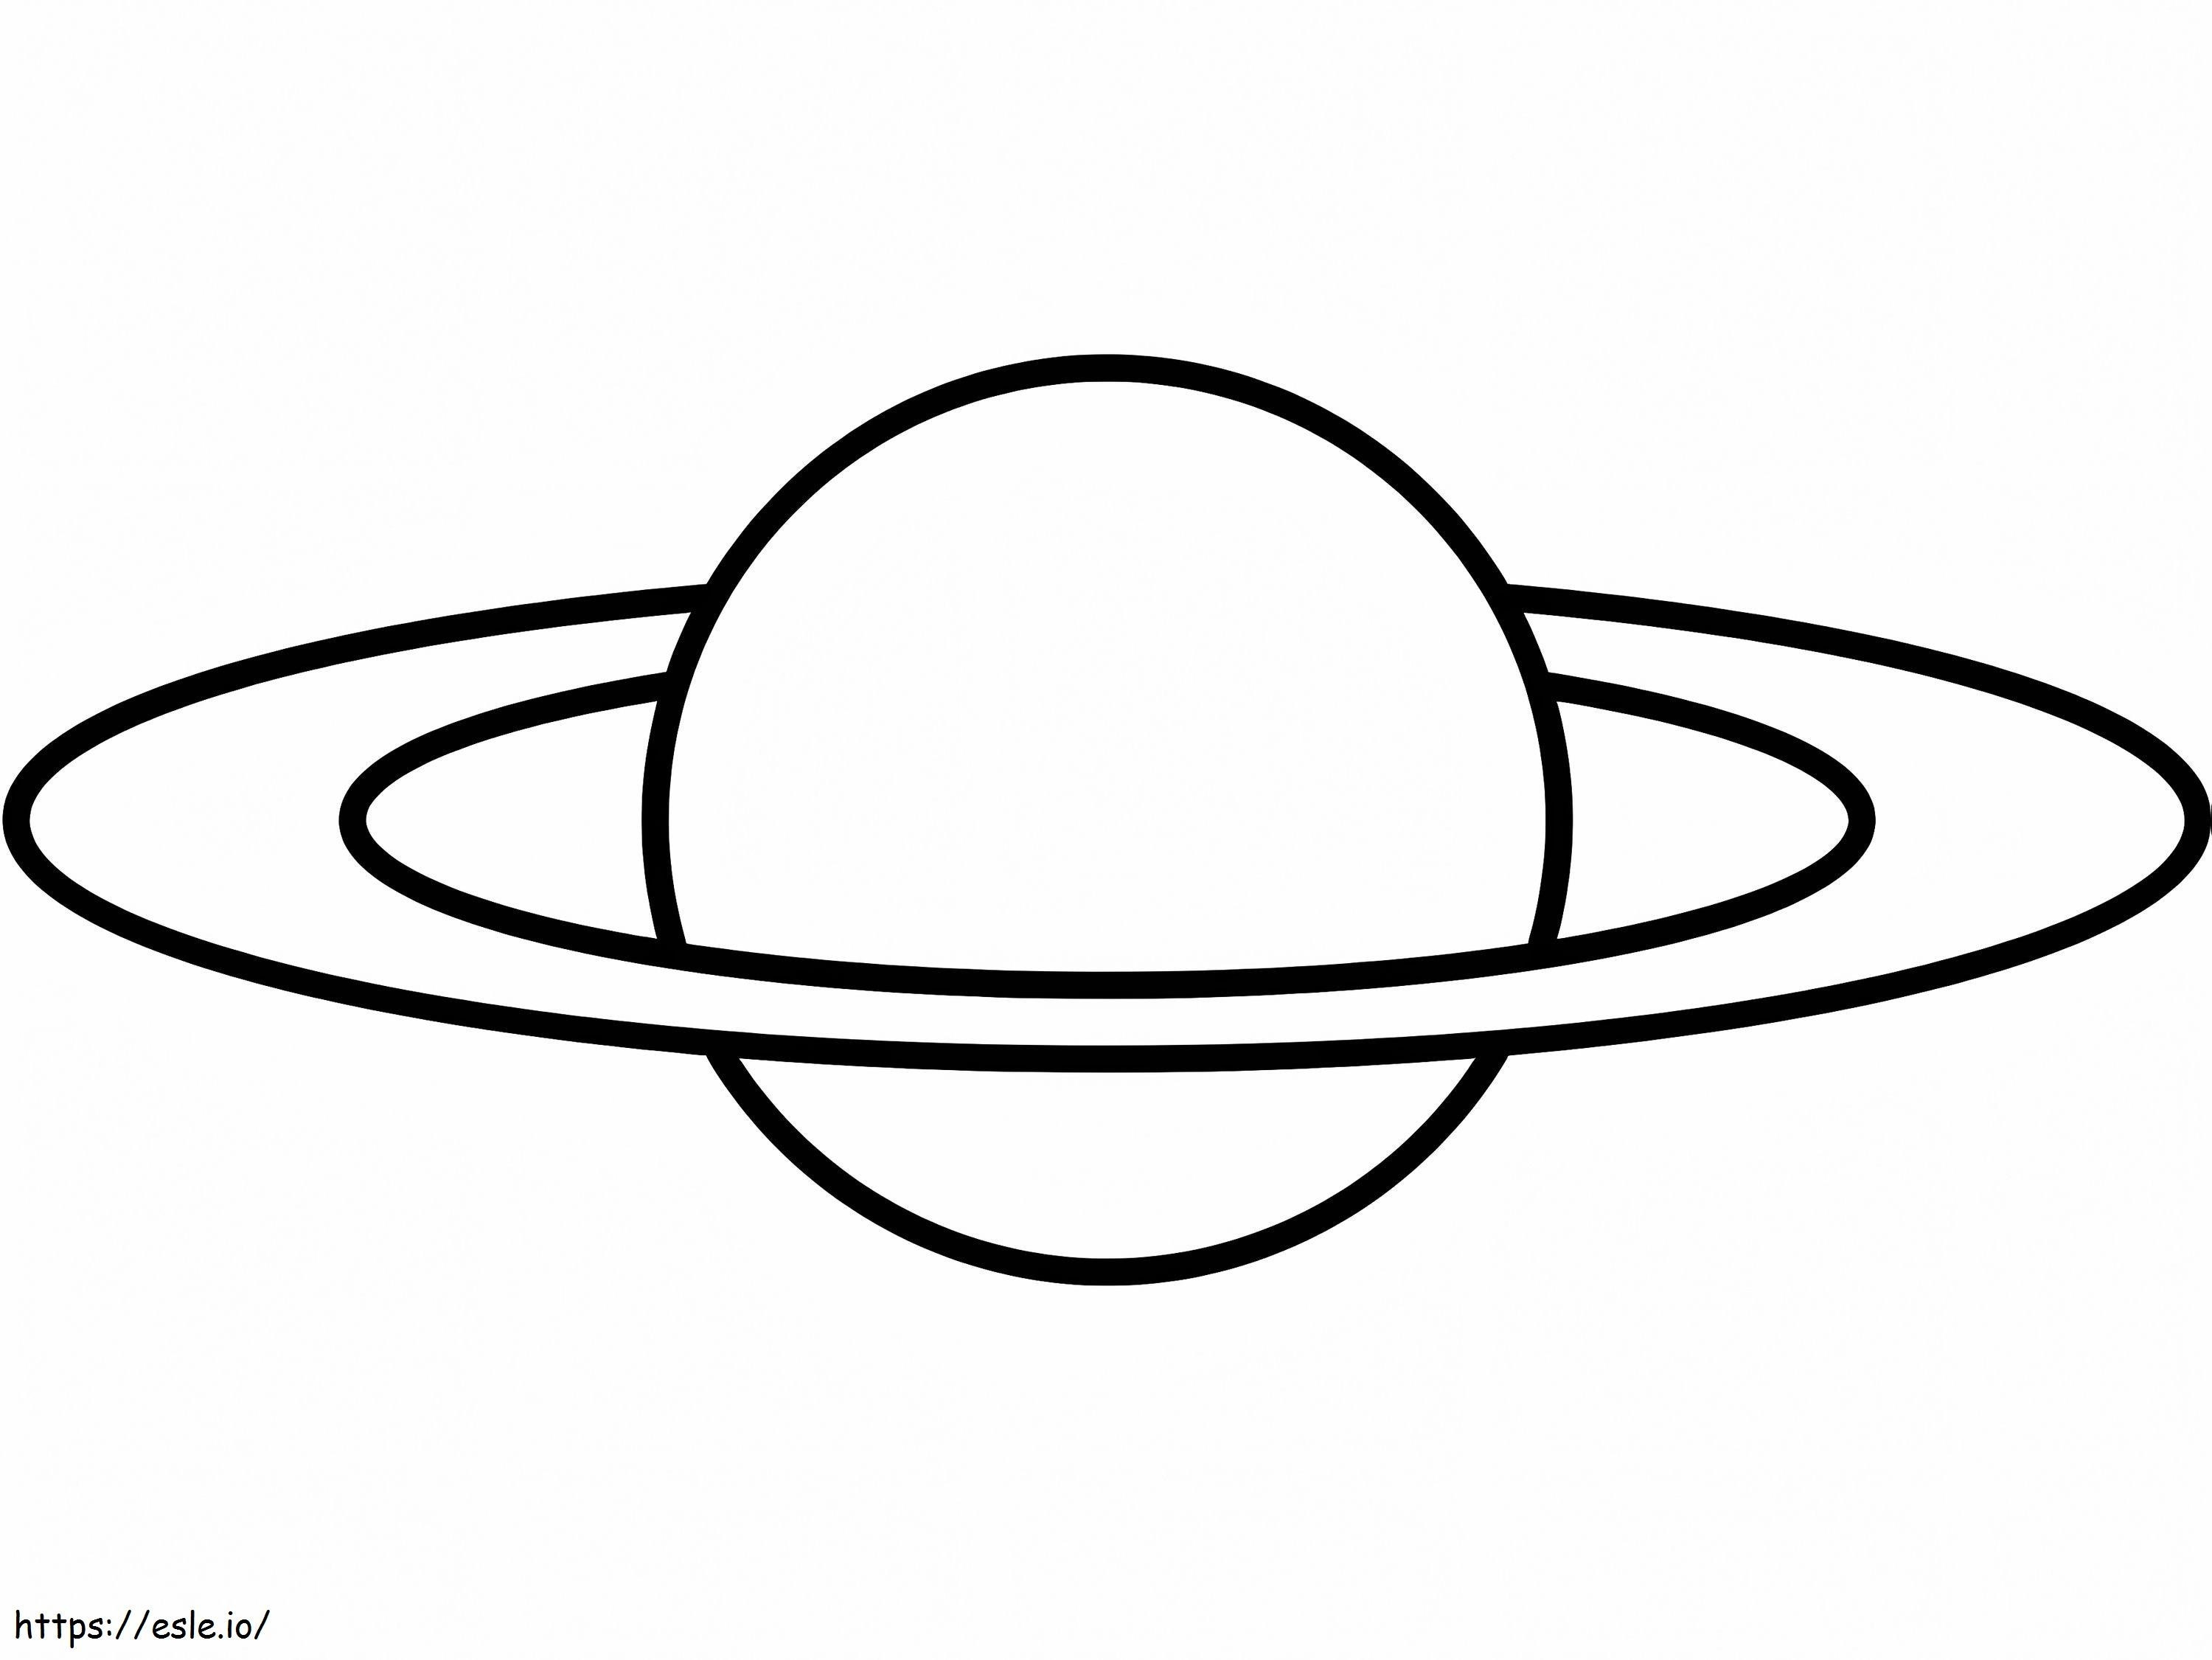 Einfacher Saturn 2 ausmalbilder